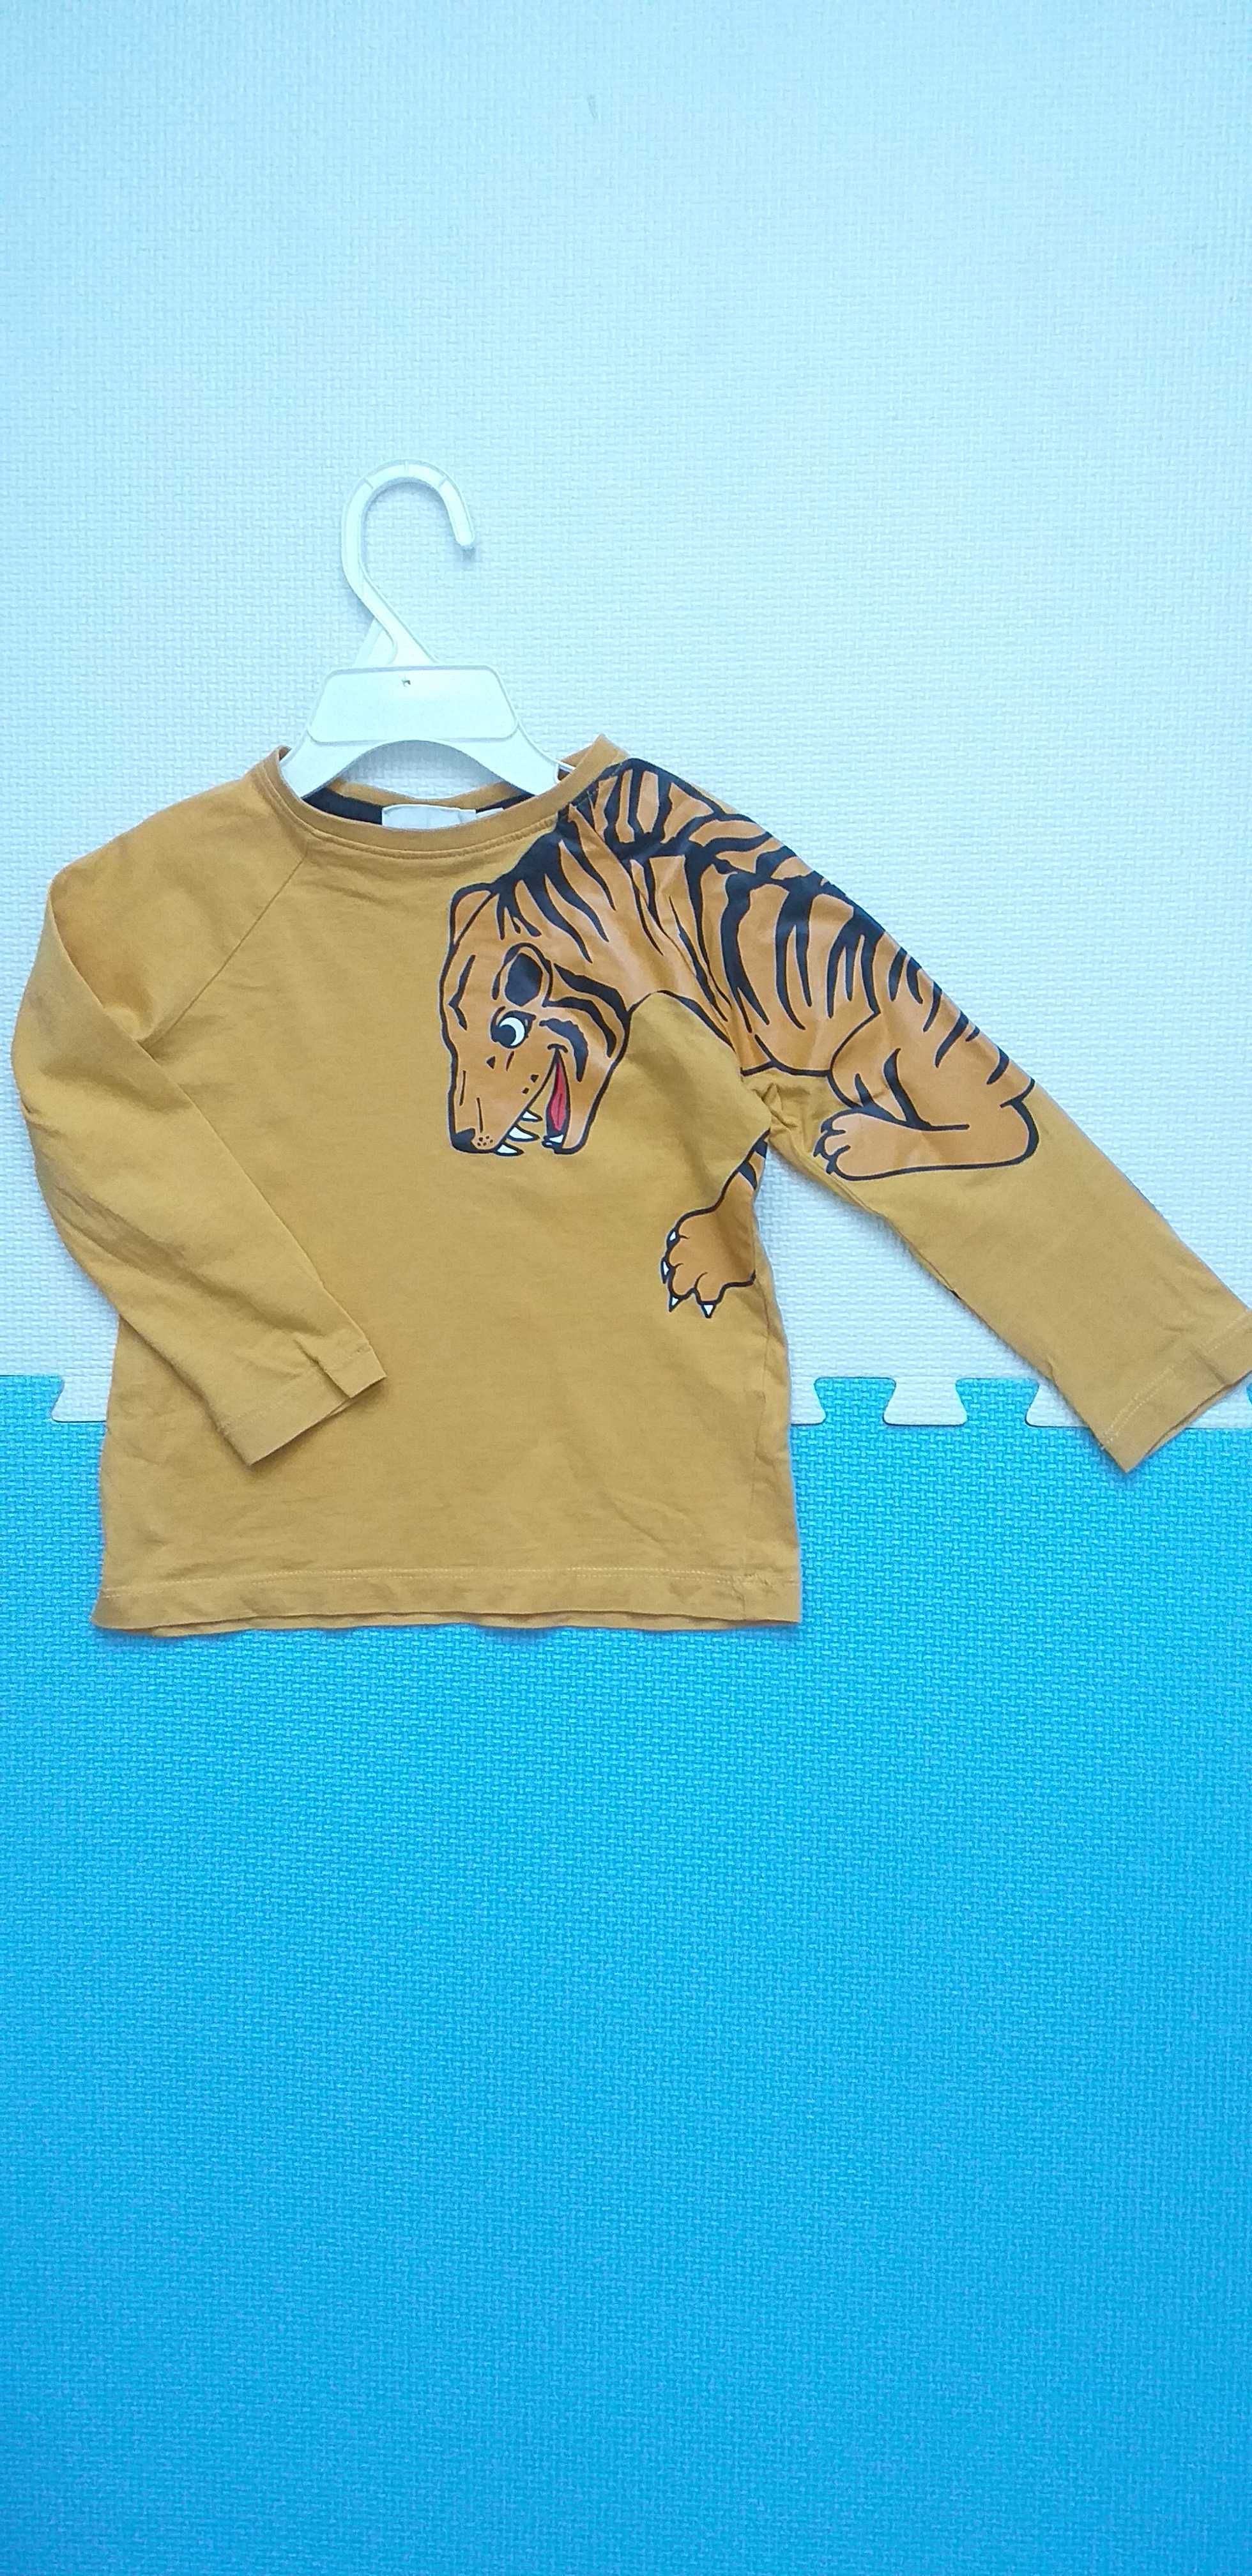 Bluzka koszulka na długi rękaw z tygrysem tygrys KappAhl 86-92